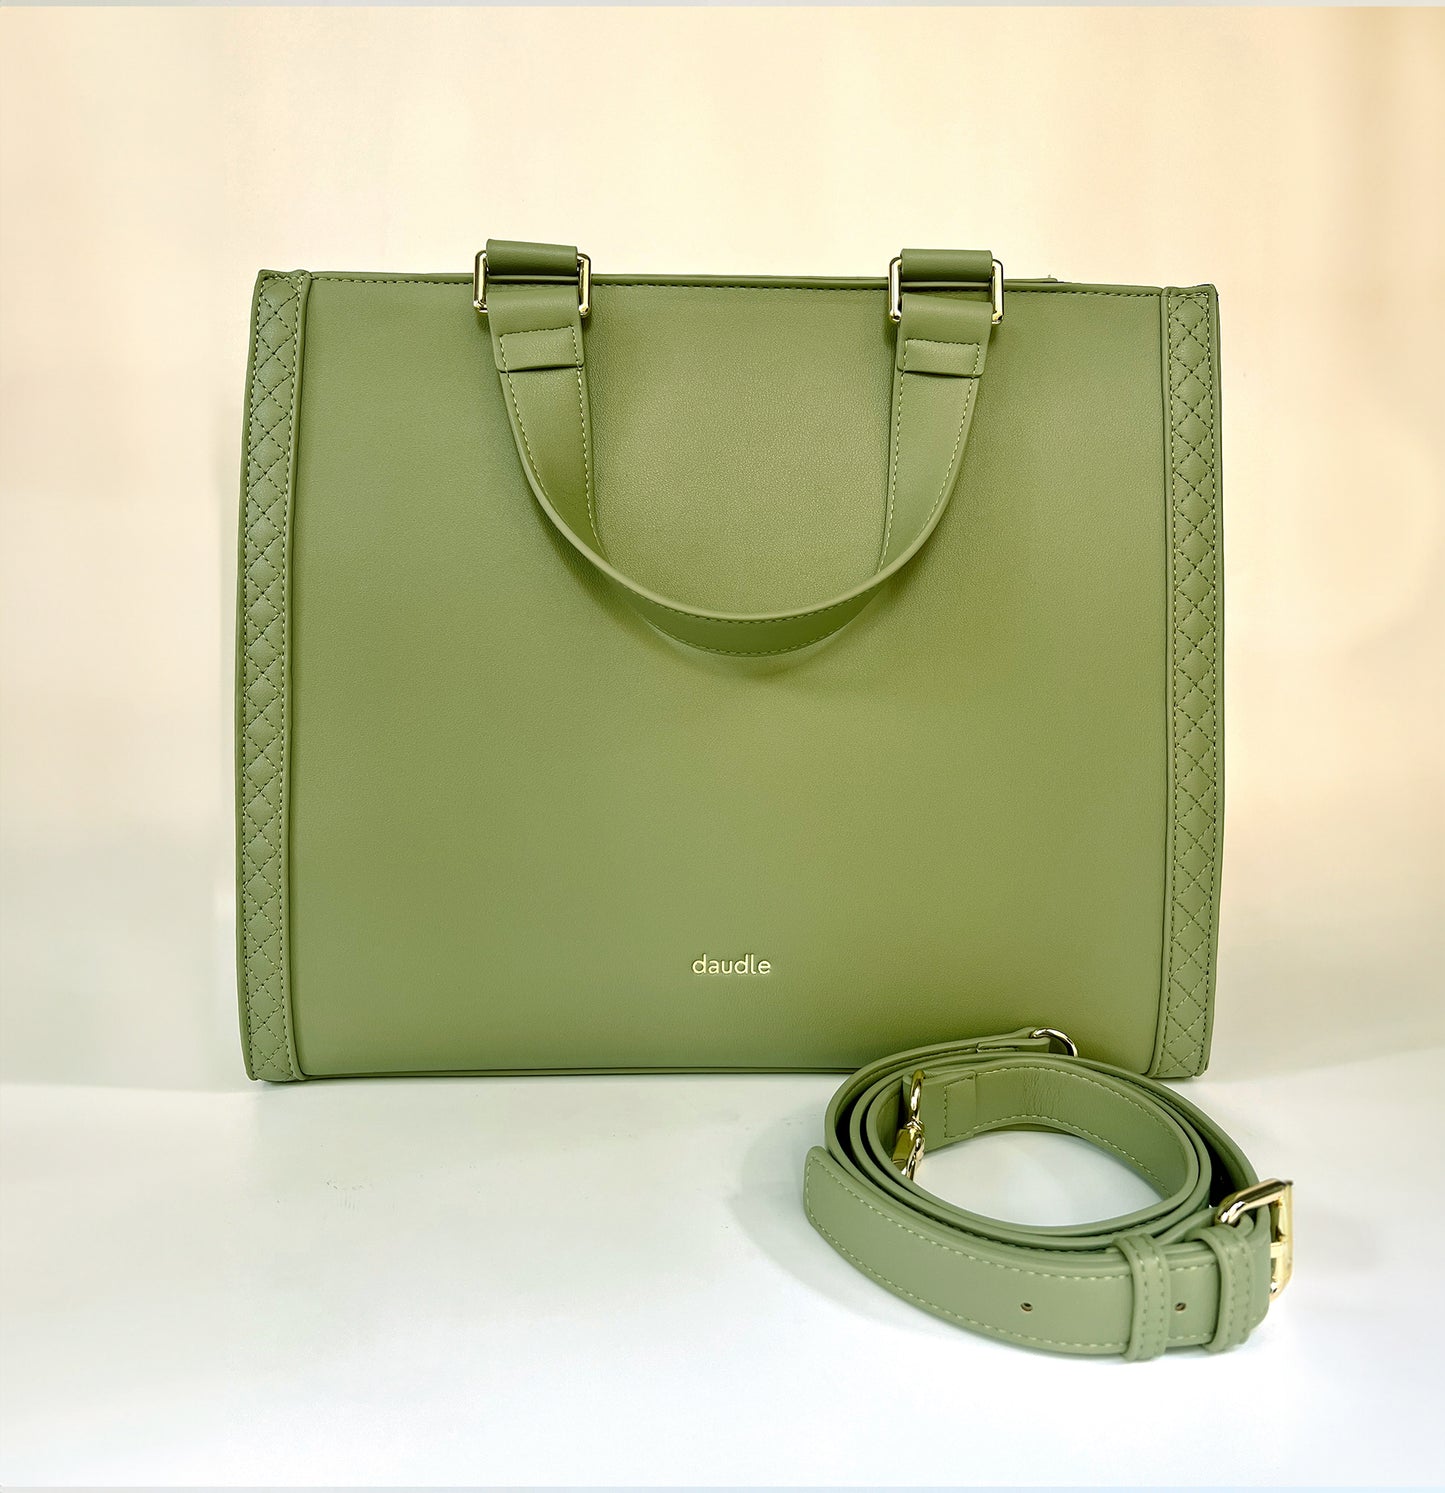 Green Elegance Designer Tote Bag - LIMITED EDITION